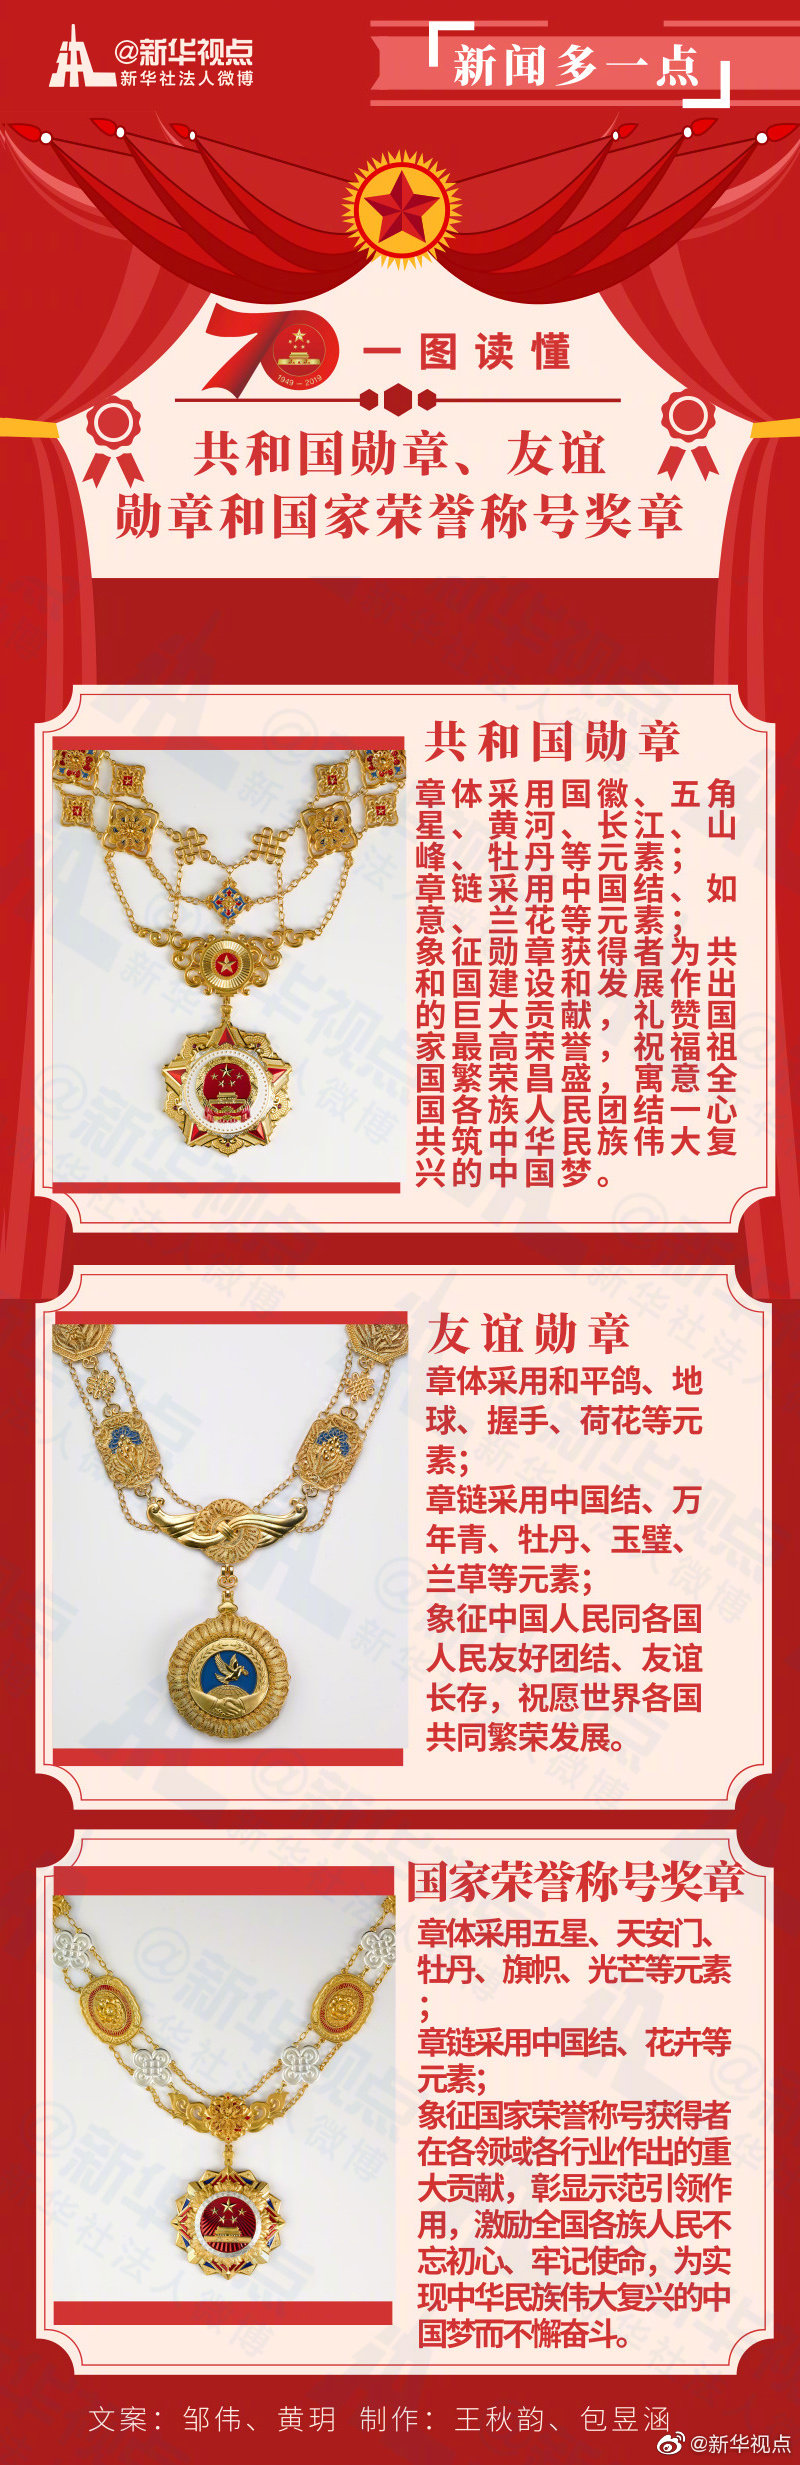 共和国勋章与国家荣誉称号的区别